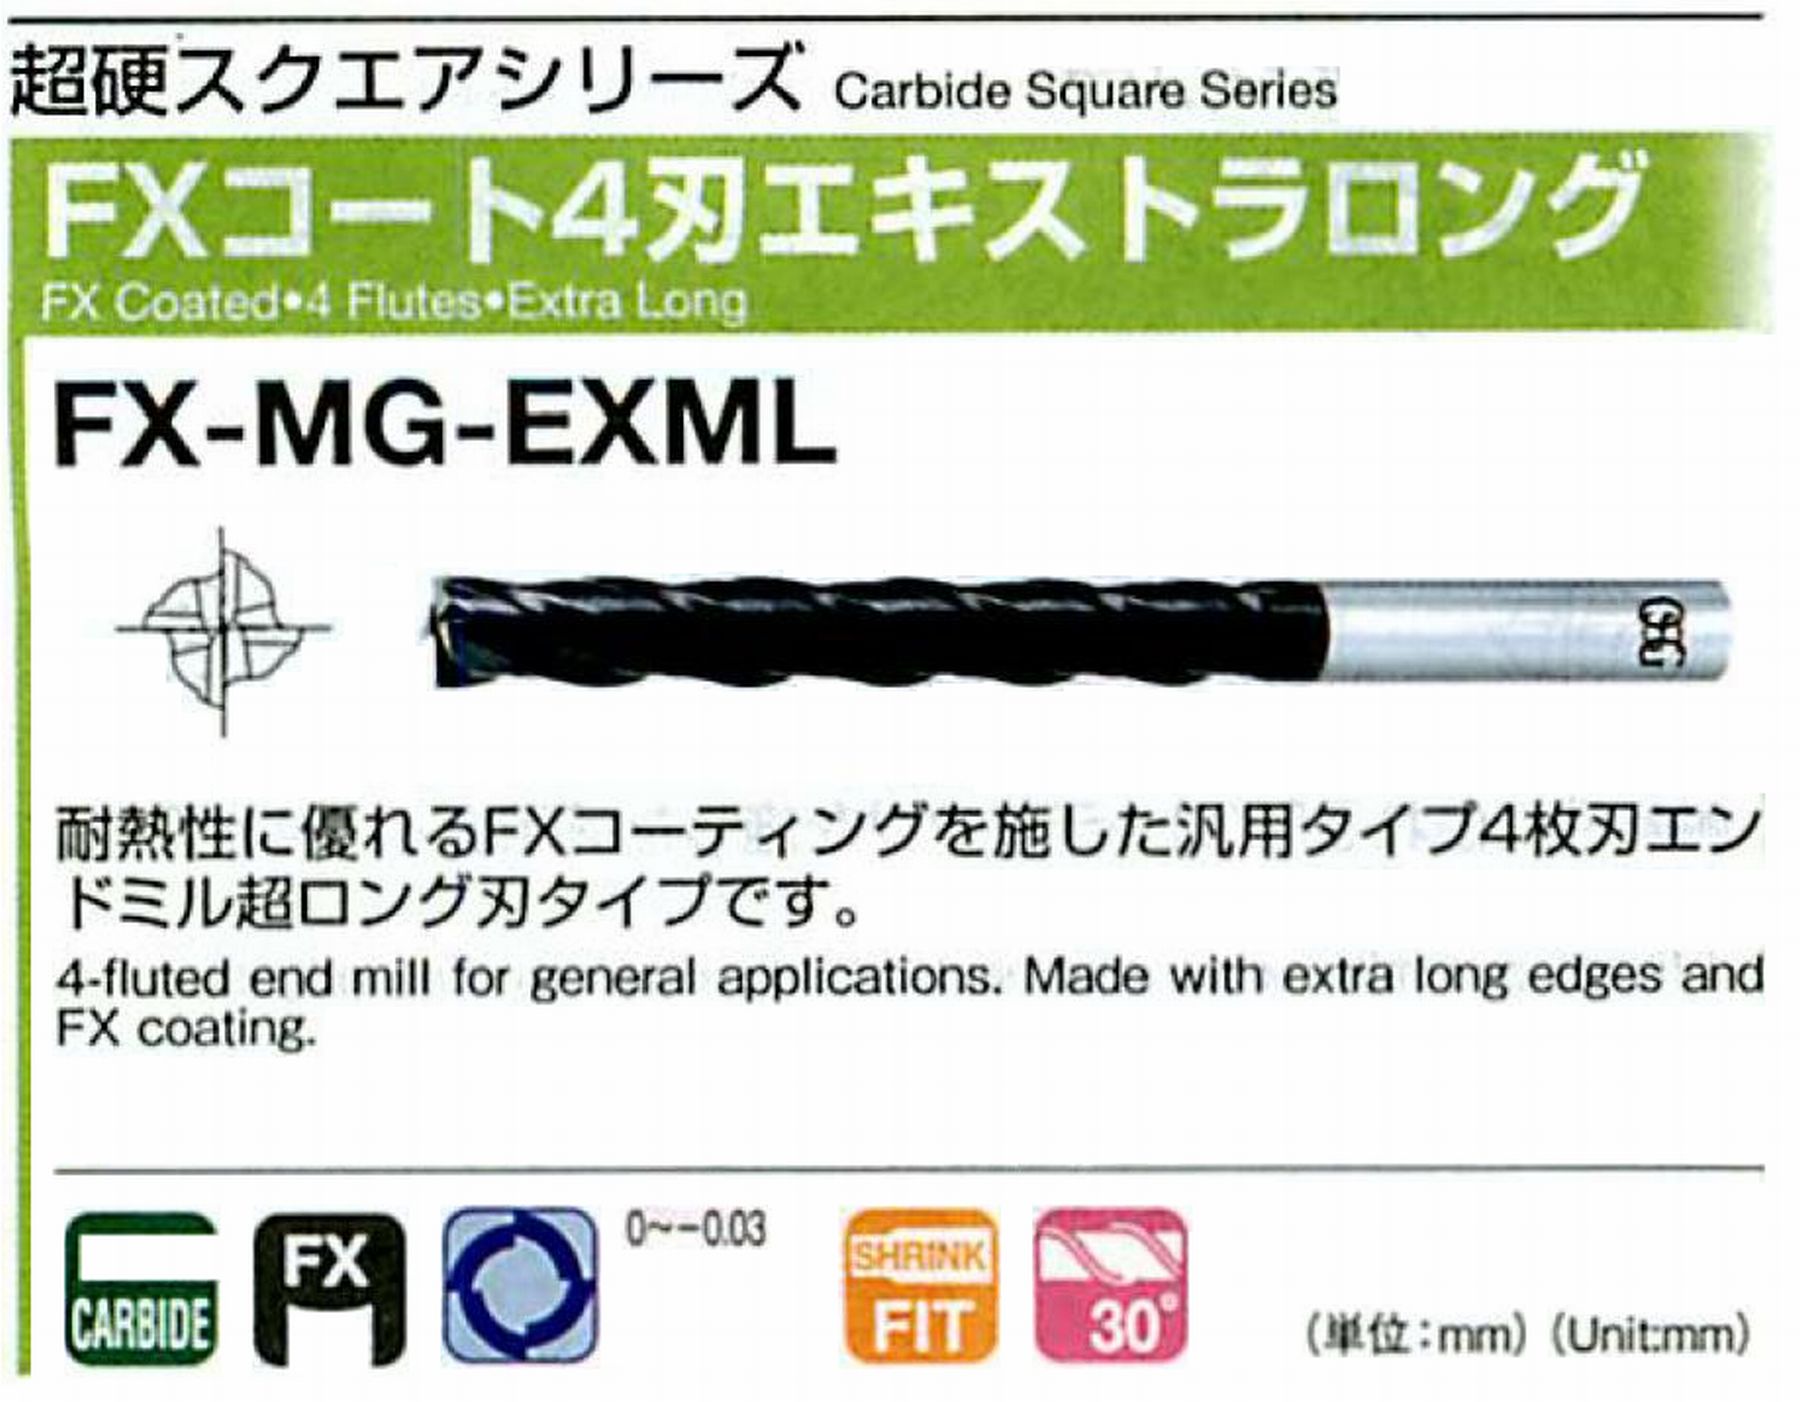 オーエスジー/OSG FXコート4刃 エキストラロング FX-MG-EXML 外径3 全長60 刃長20 シャンク径6mm